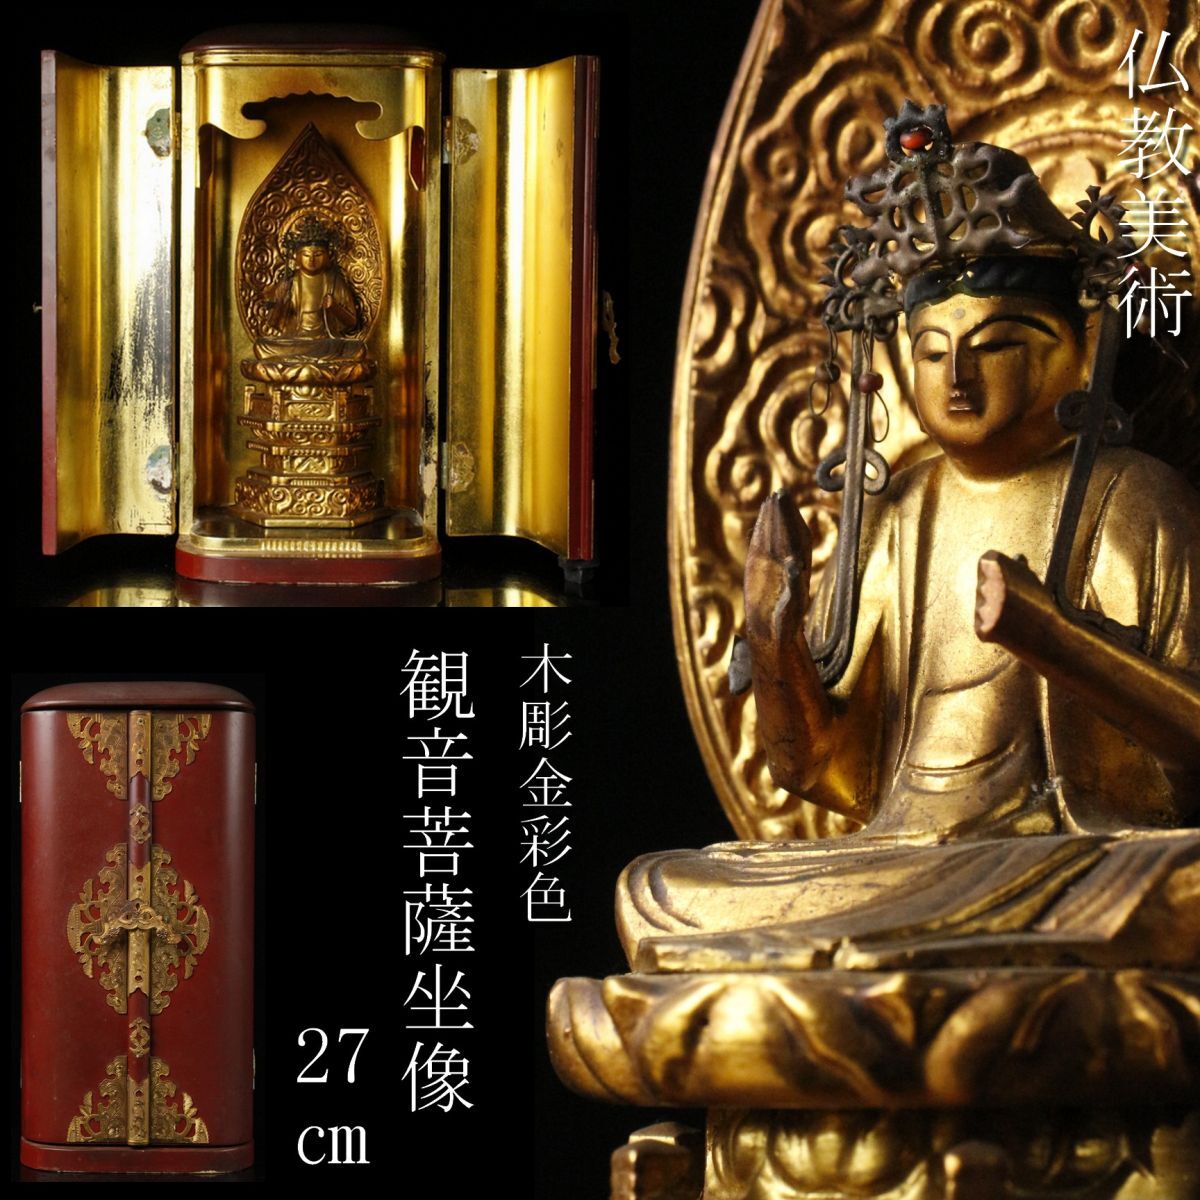 【LIG】仏教美術 木彫金彩色 観音菩薩坐像 27㎝ 仏像 朱塗厨子 寺院収蔵品 [.O]24.3の画像1